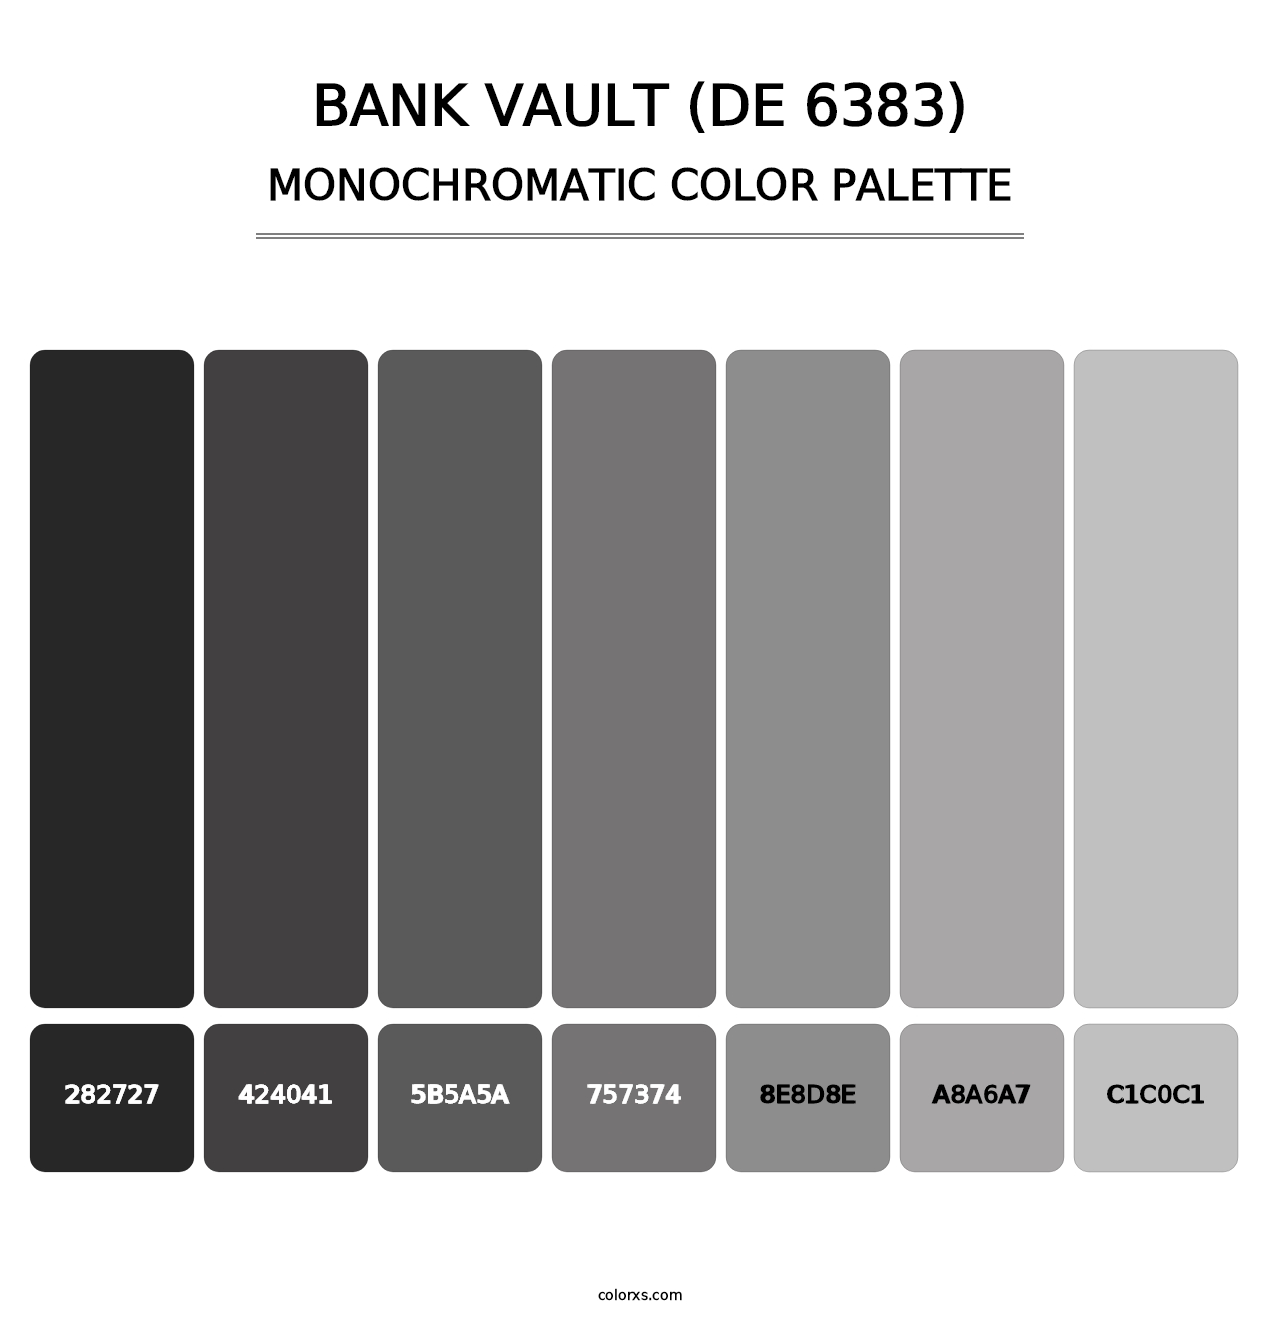 Bank Vault (DE 6383) - Monochromatic Color Palette